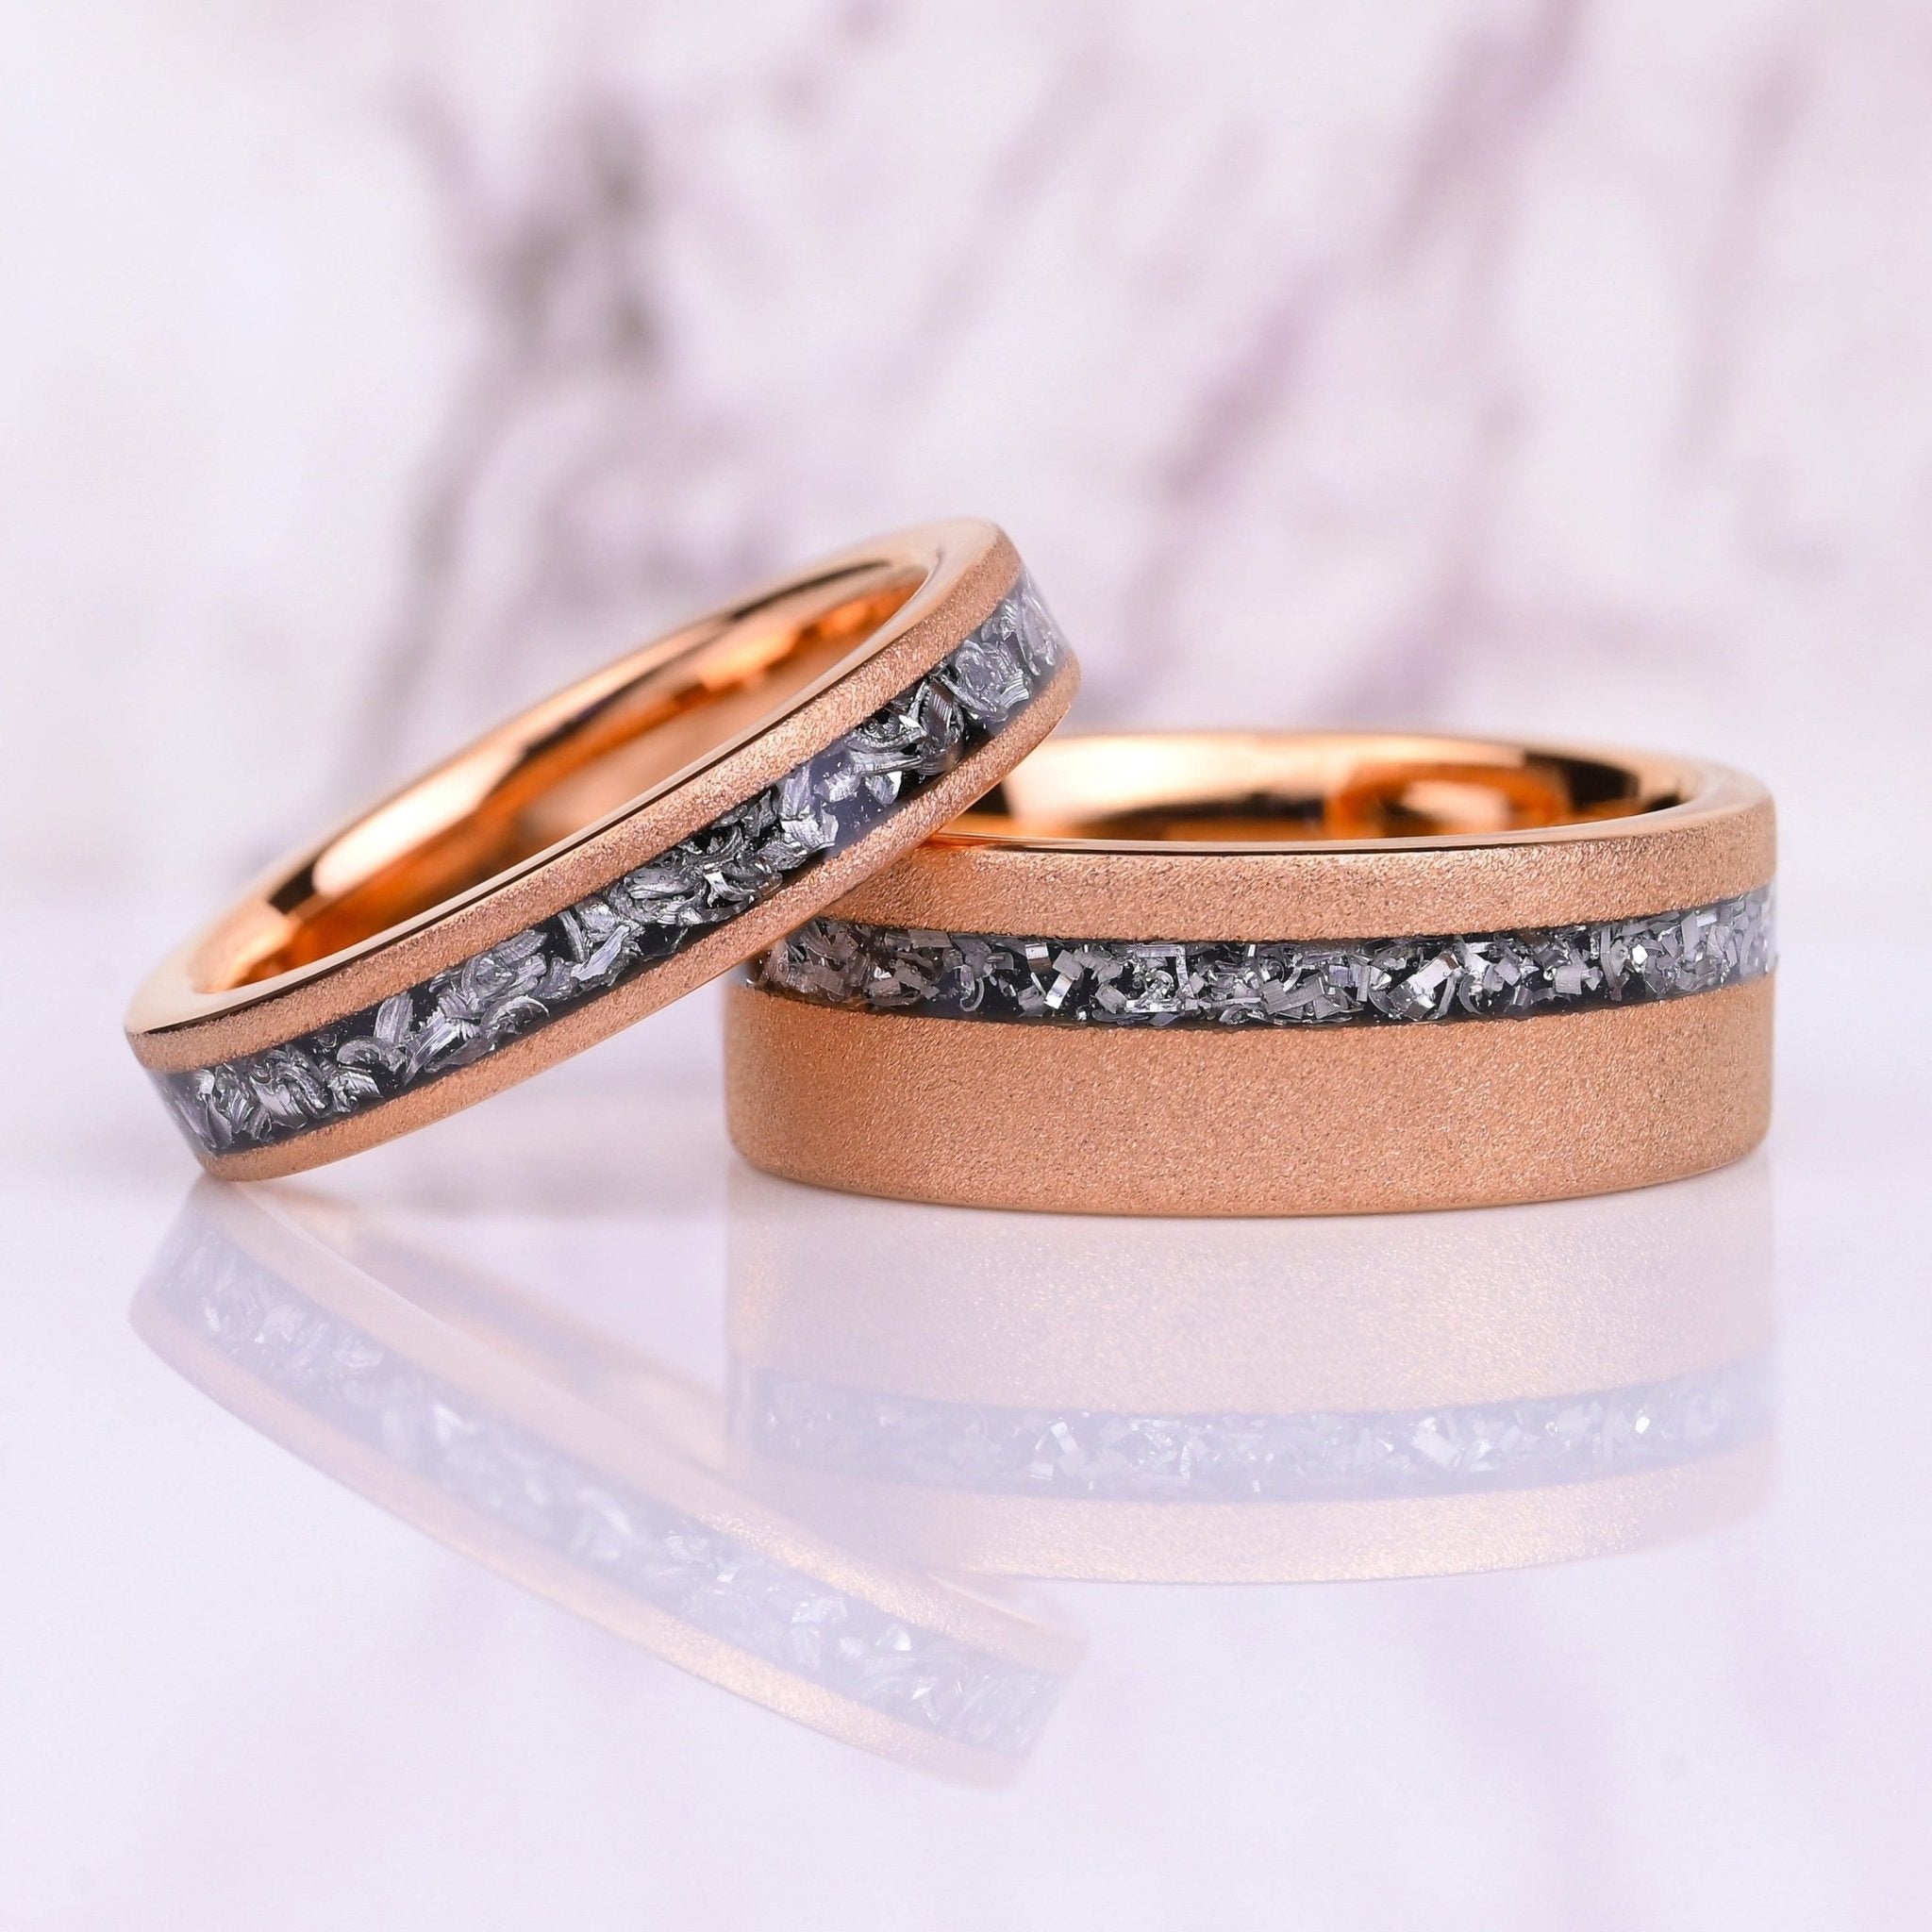 Sandblasted Rose Gold Couple Ring Set - TUNSGTEN / 925 SILVER Rings -  Meteorite Inlay - Wedding Rings